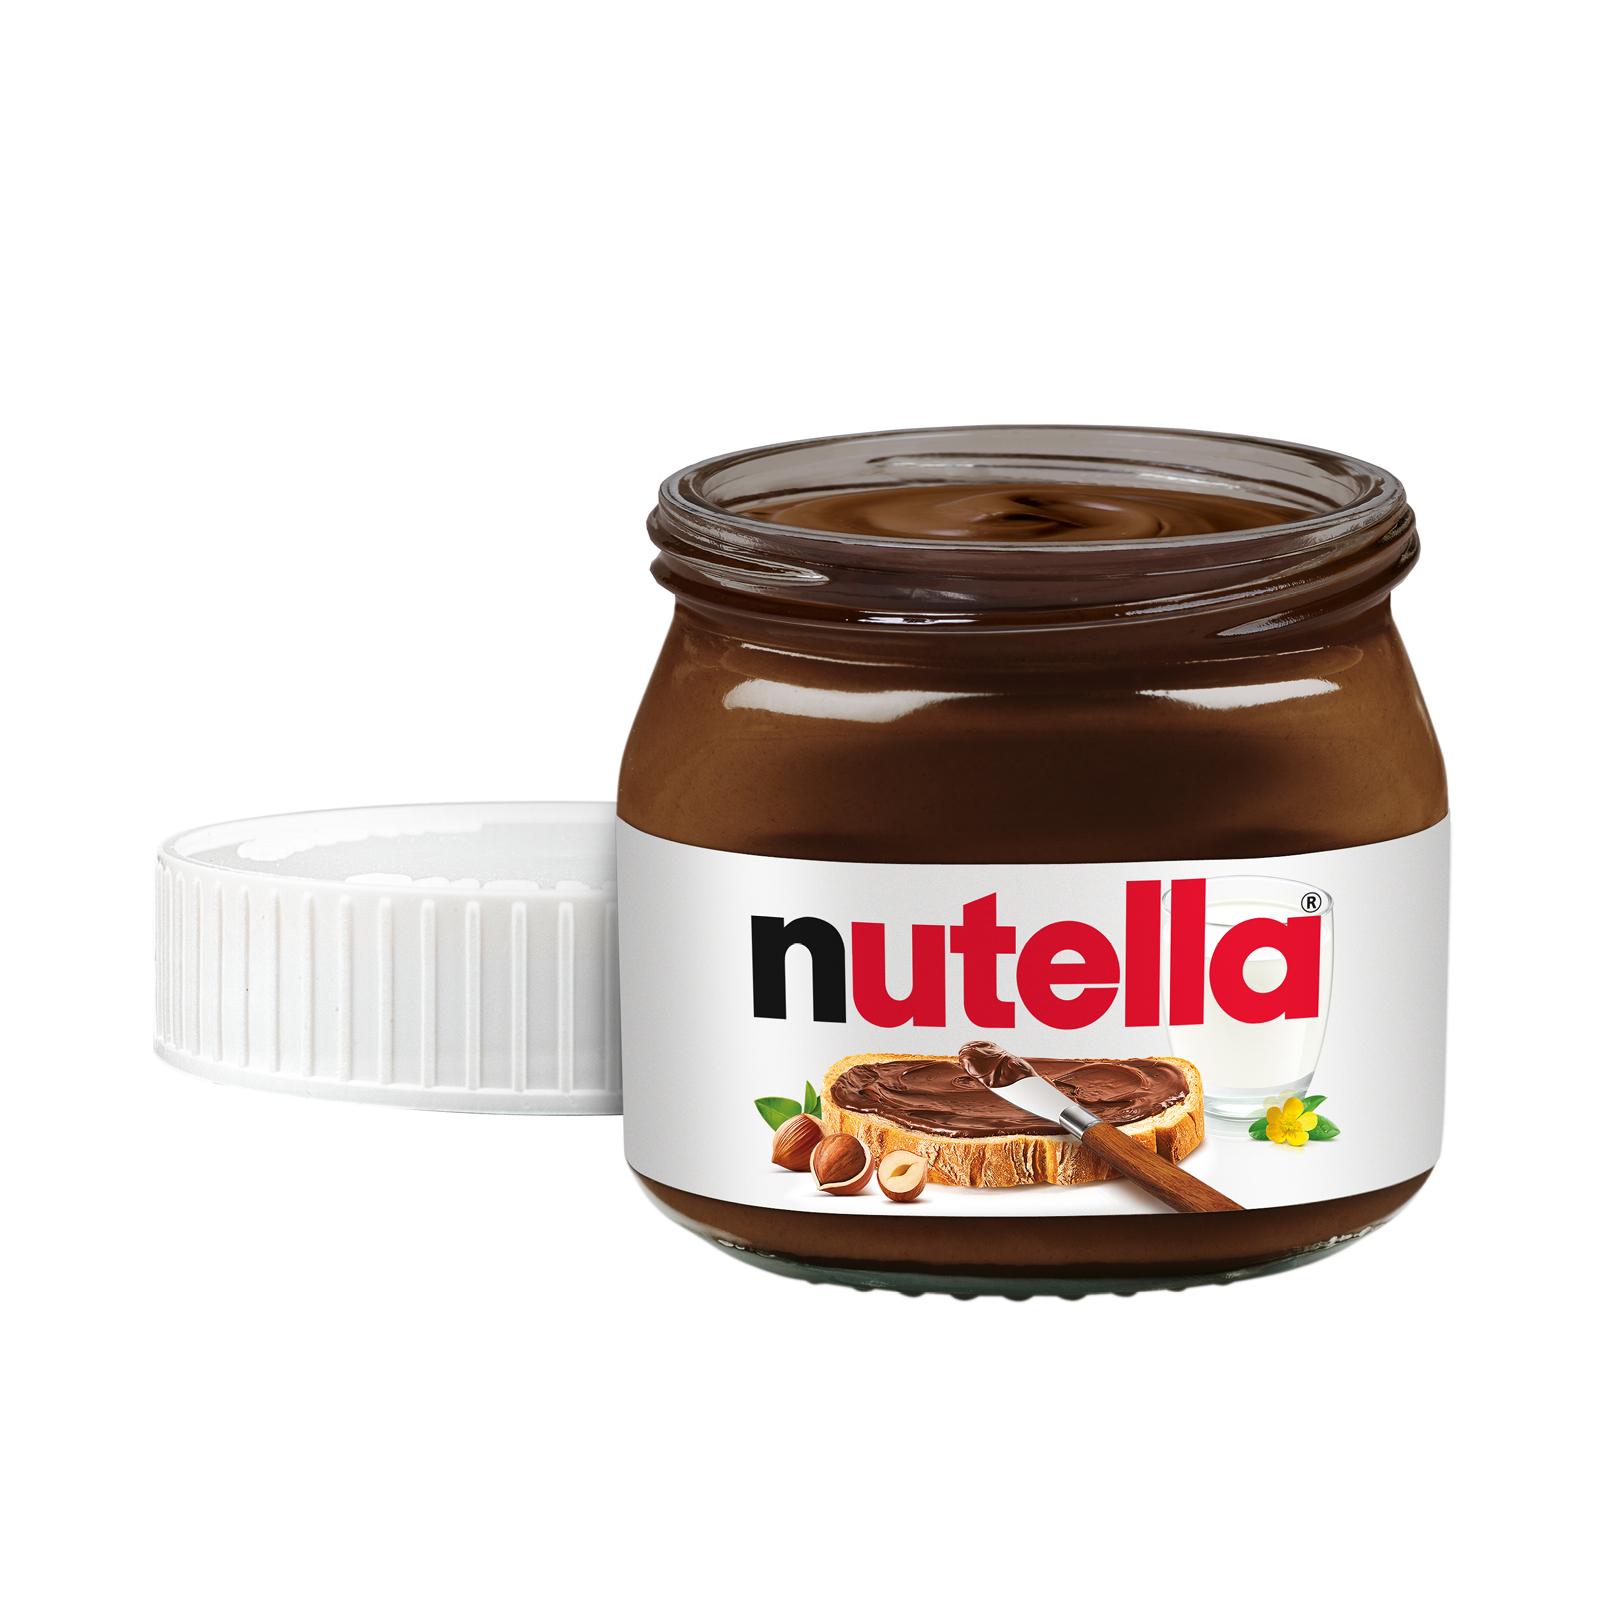 Nutella Mini Glass Hazelnut Spread 25 g